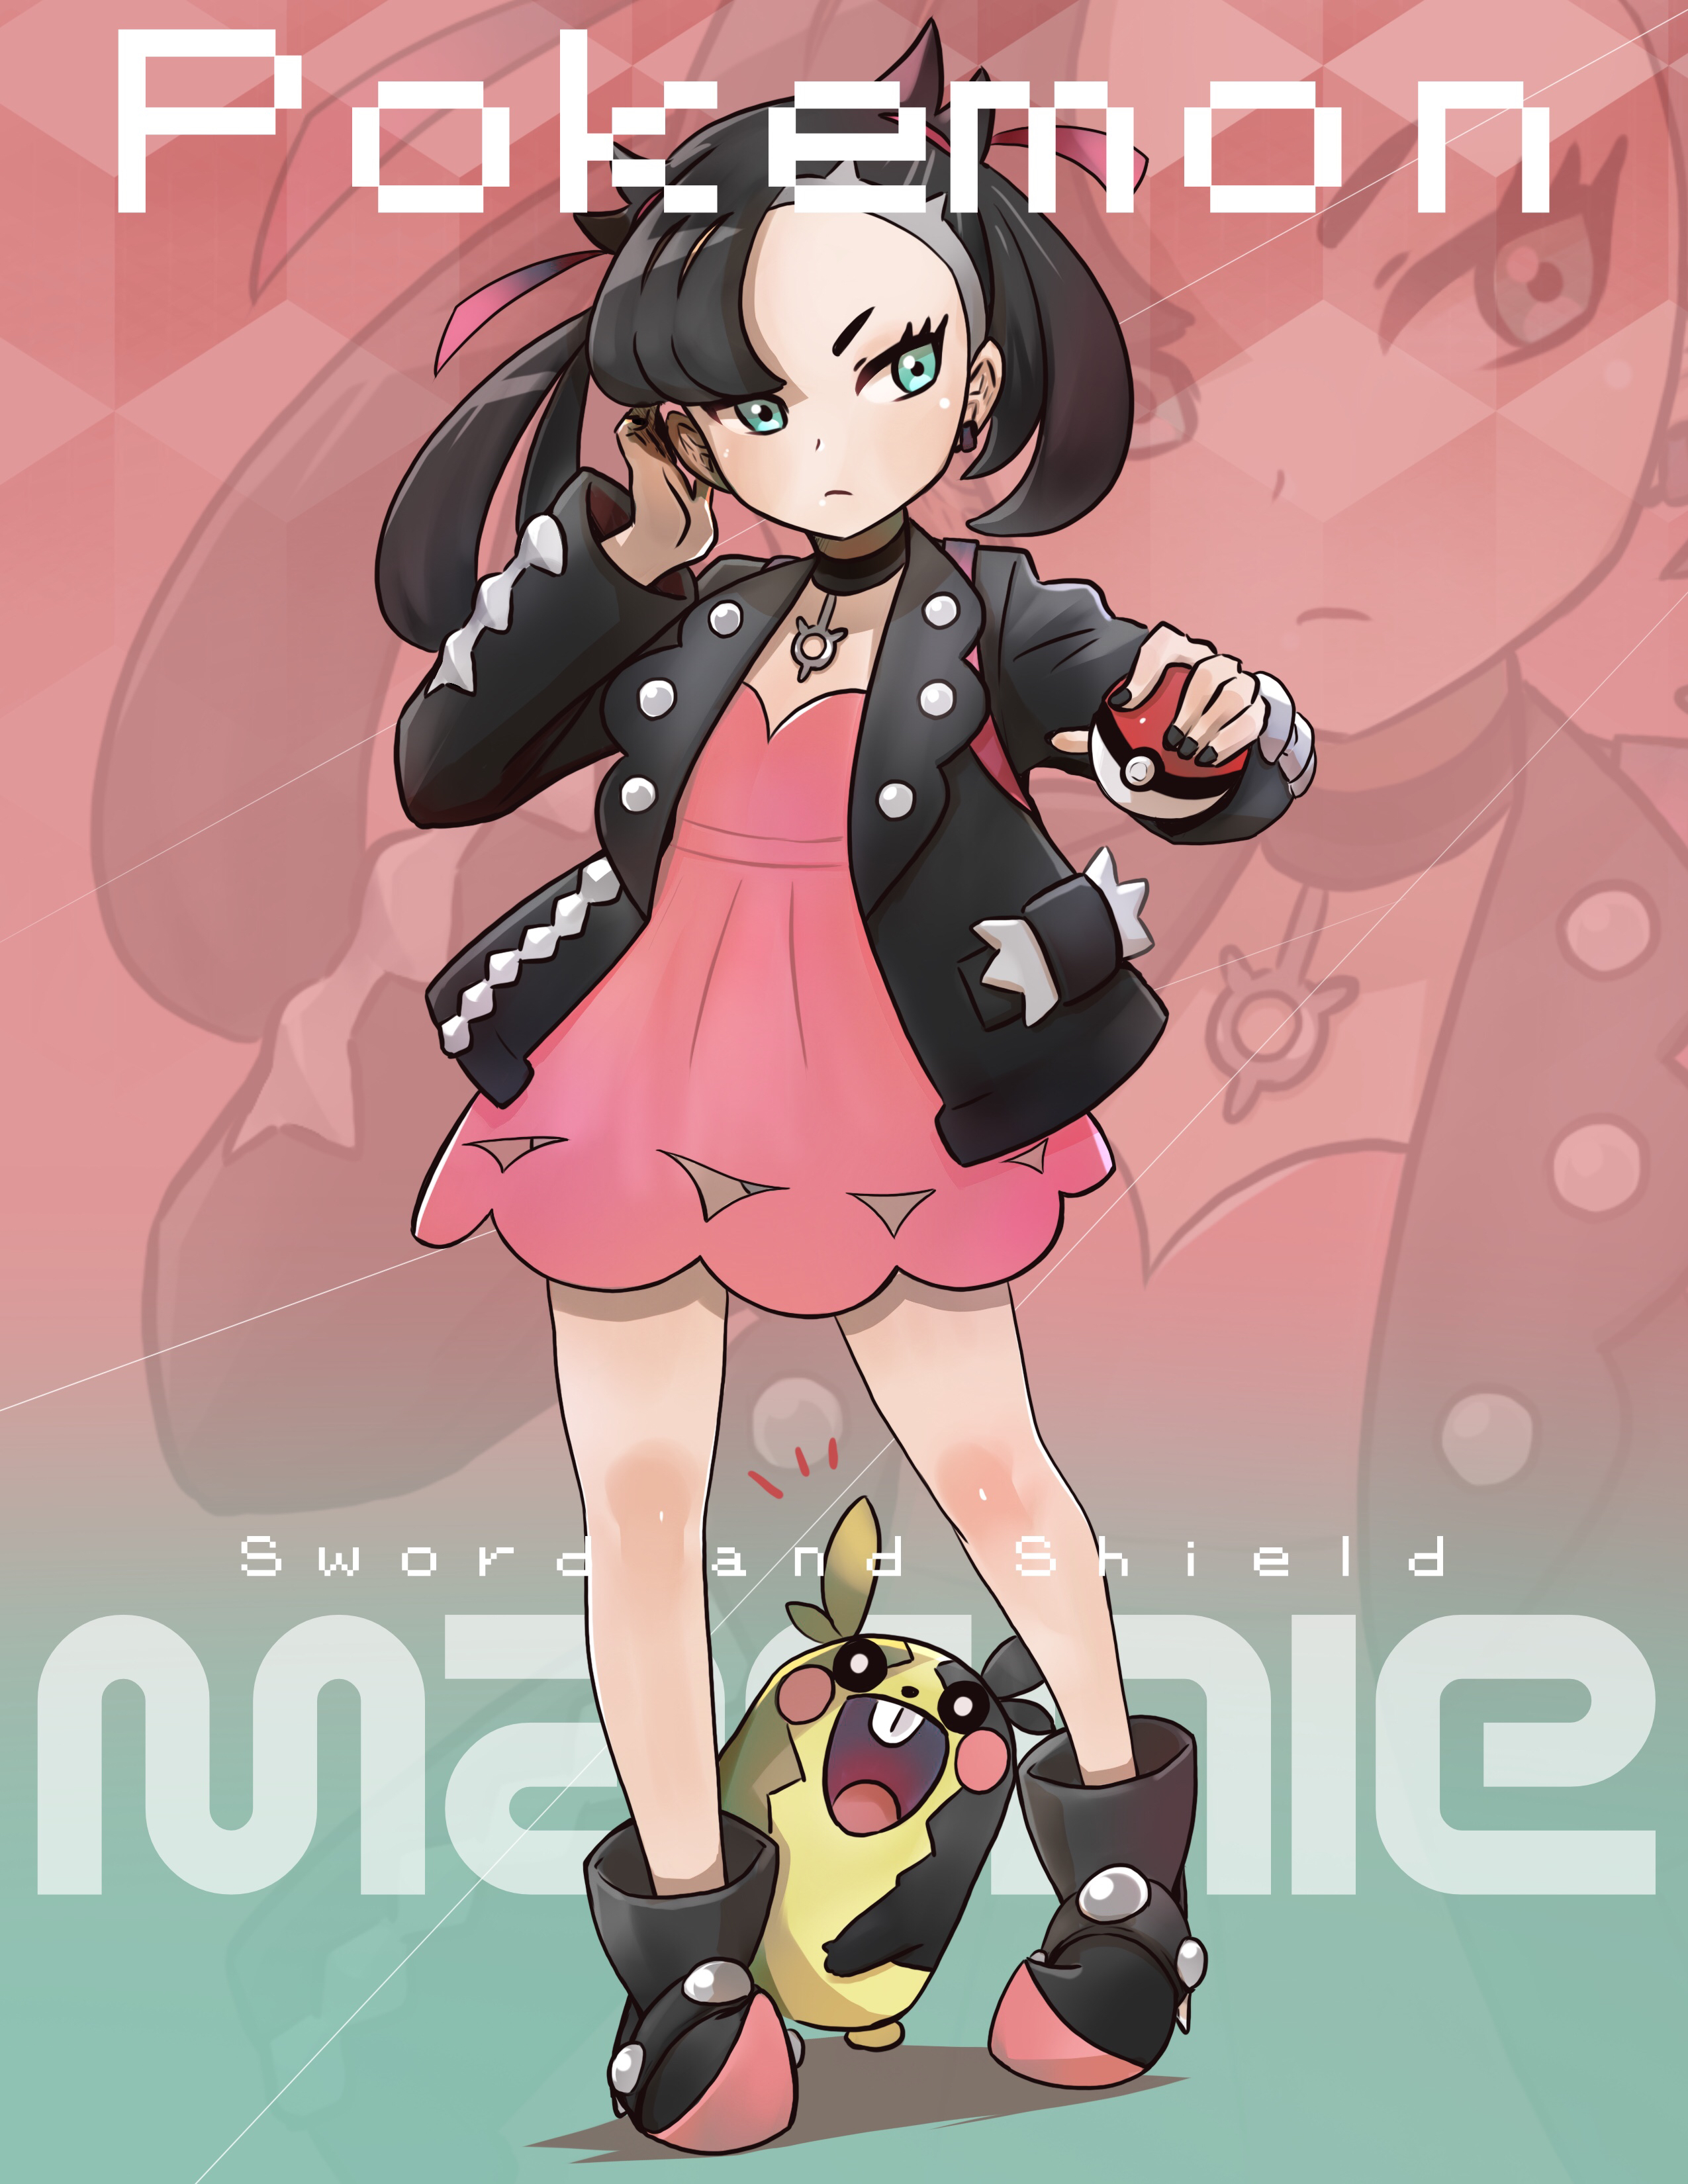 Marnie from Pokémon SW&SH